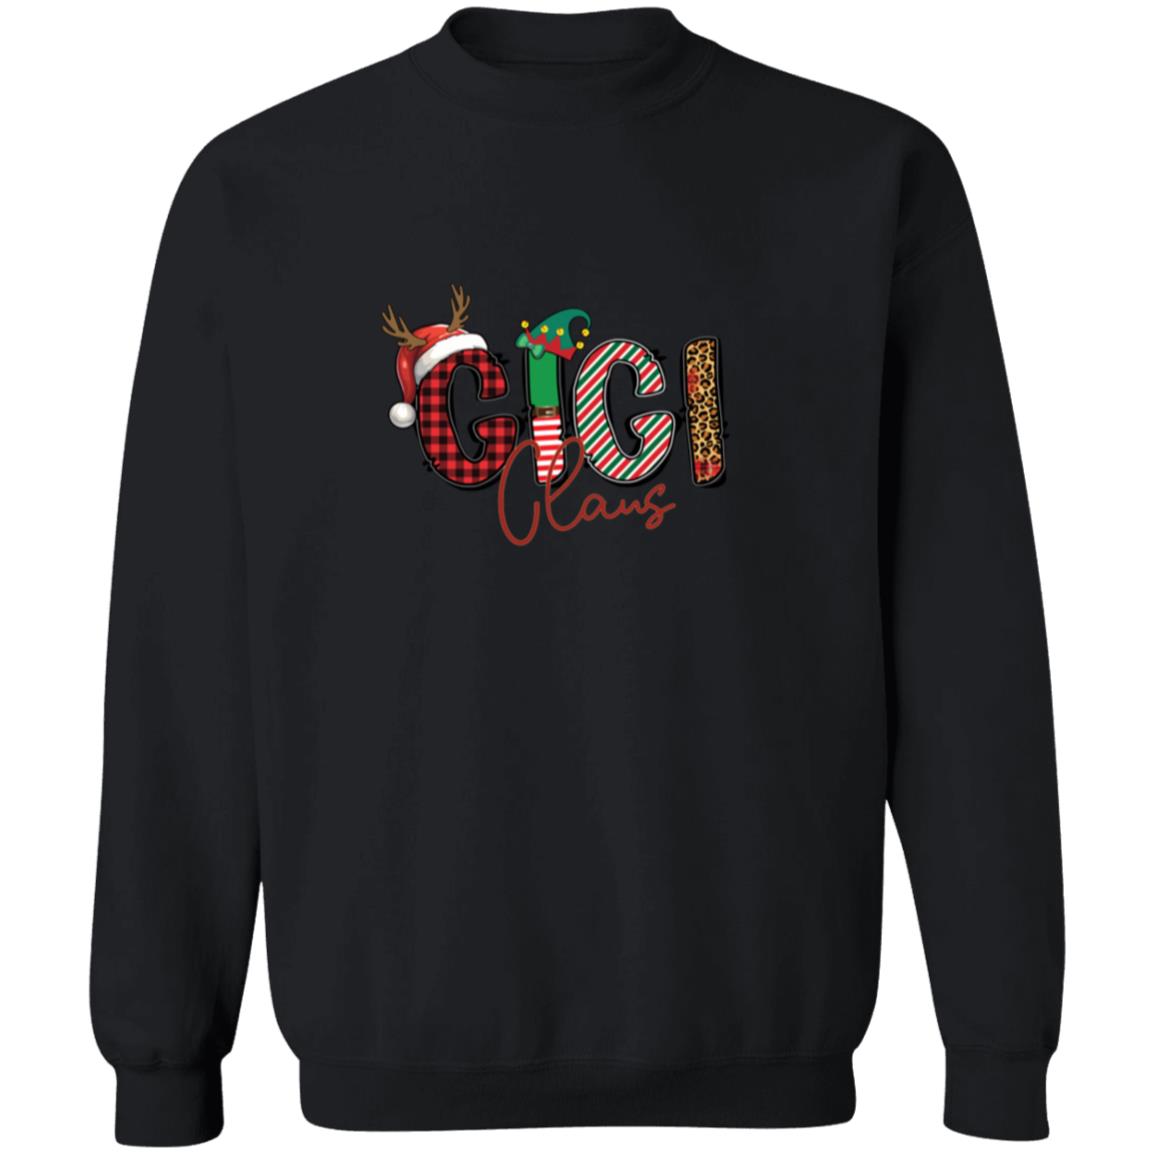 Grandma/Gigi/Mimi/Nana Claus Christmas Sweatshirt